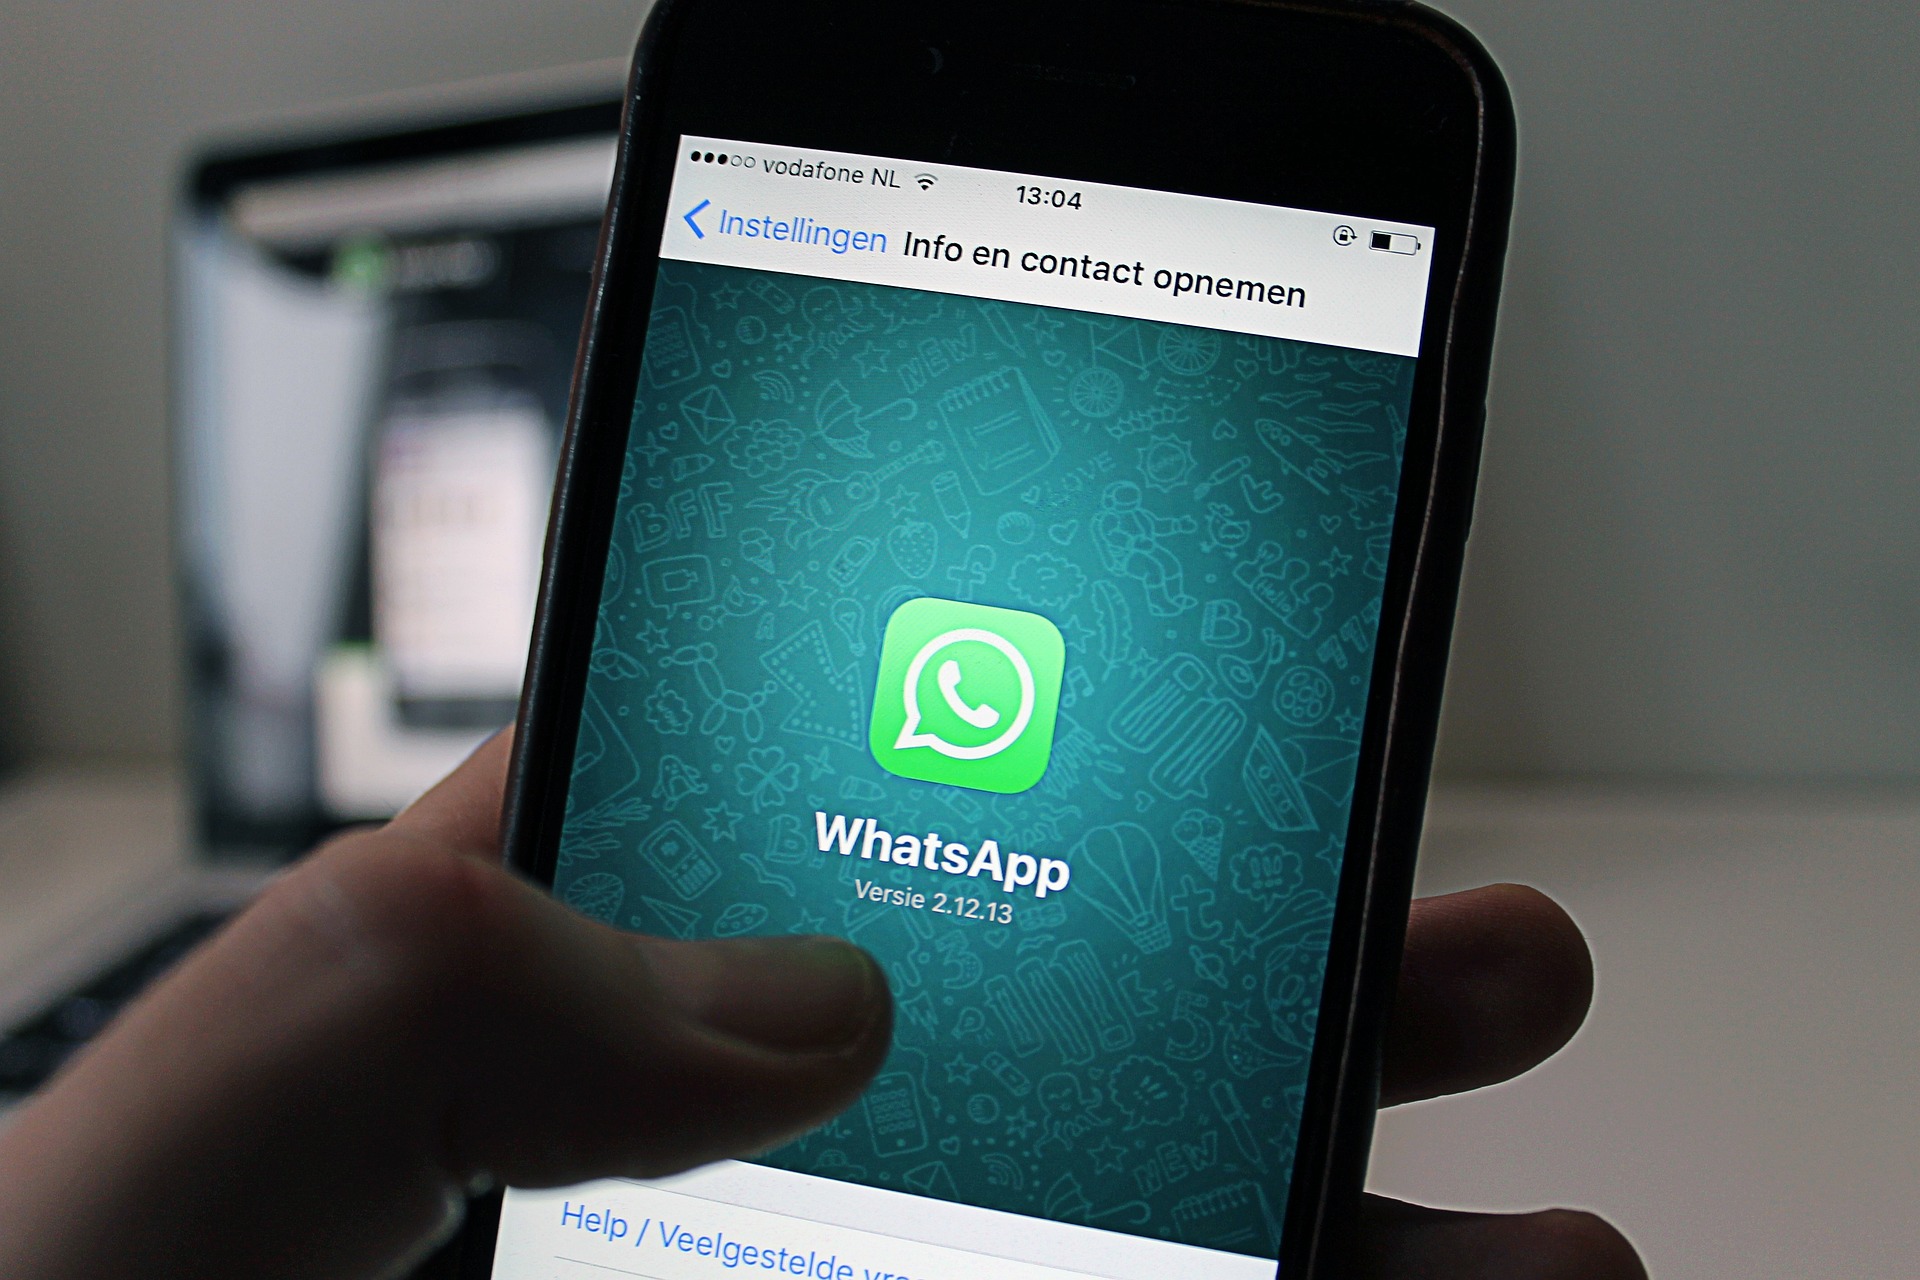 WhatsApp gratis addio: la novità semina il panico tra gli utenti